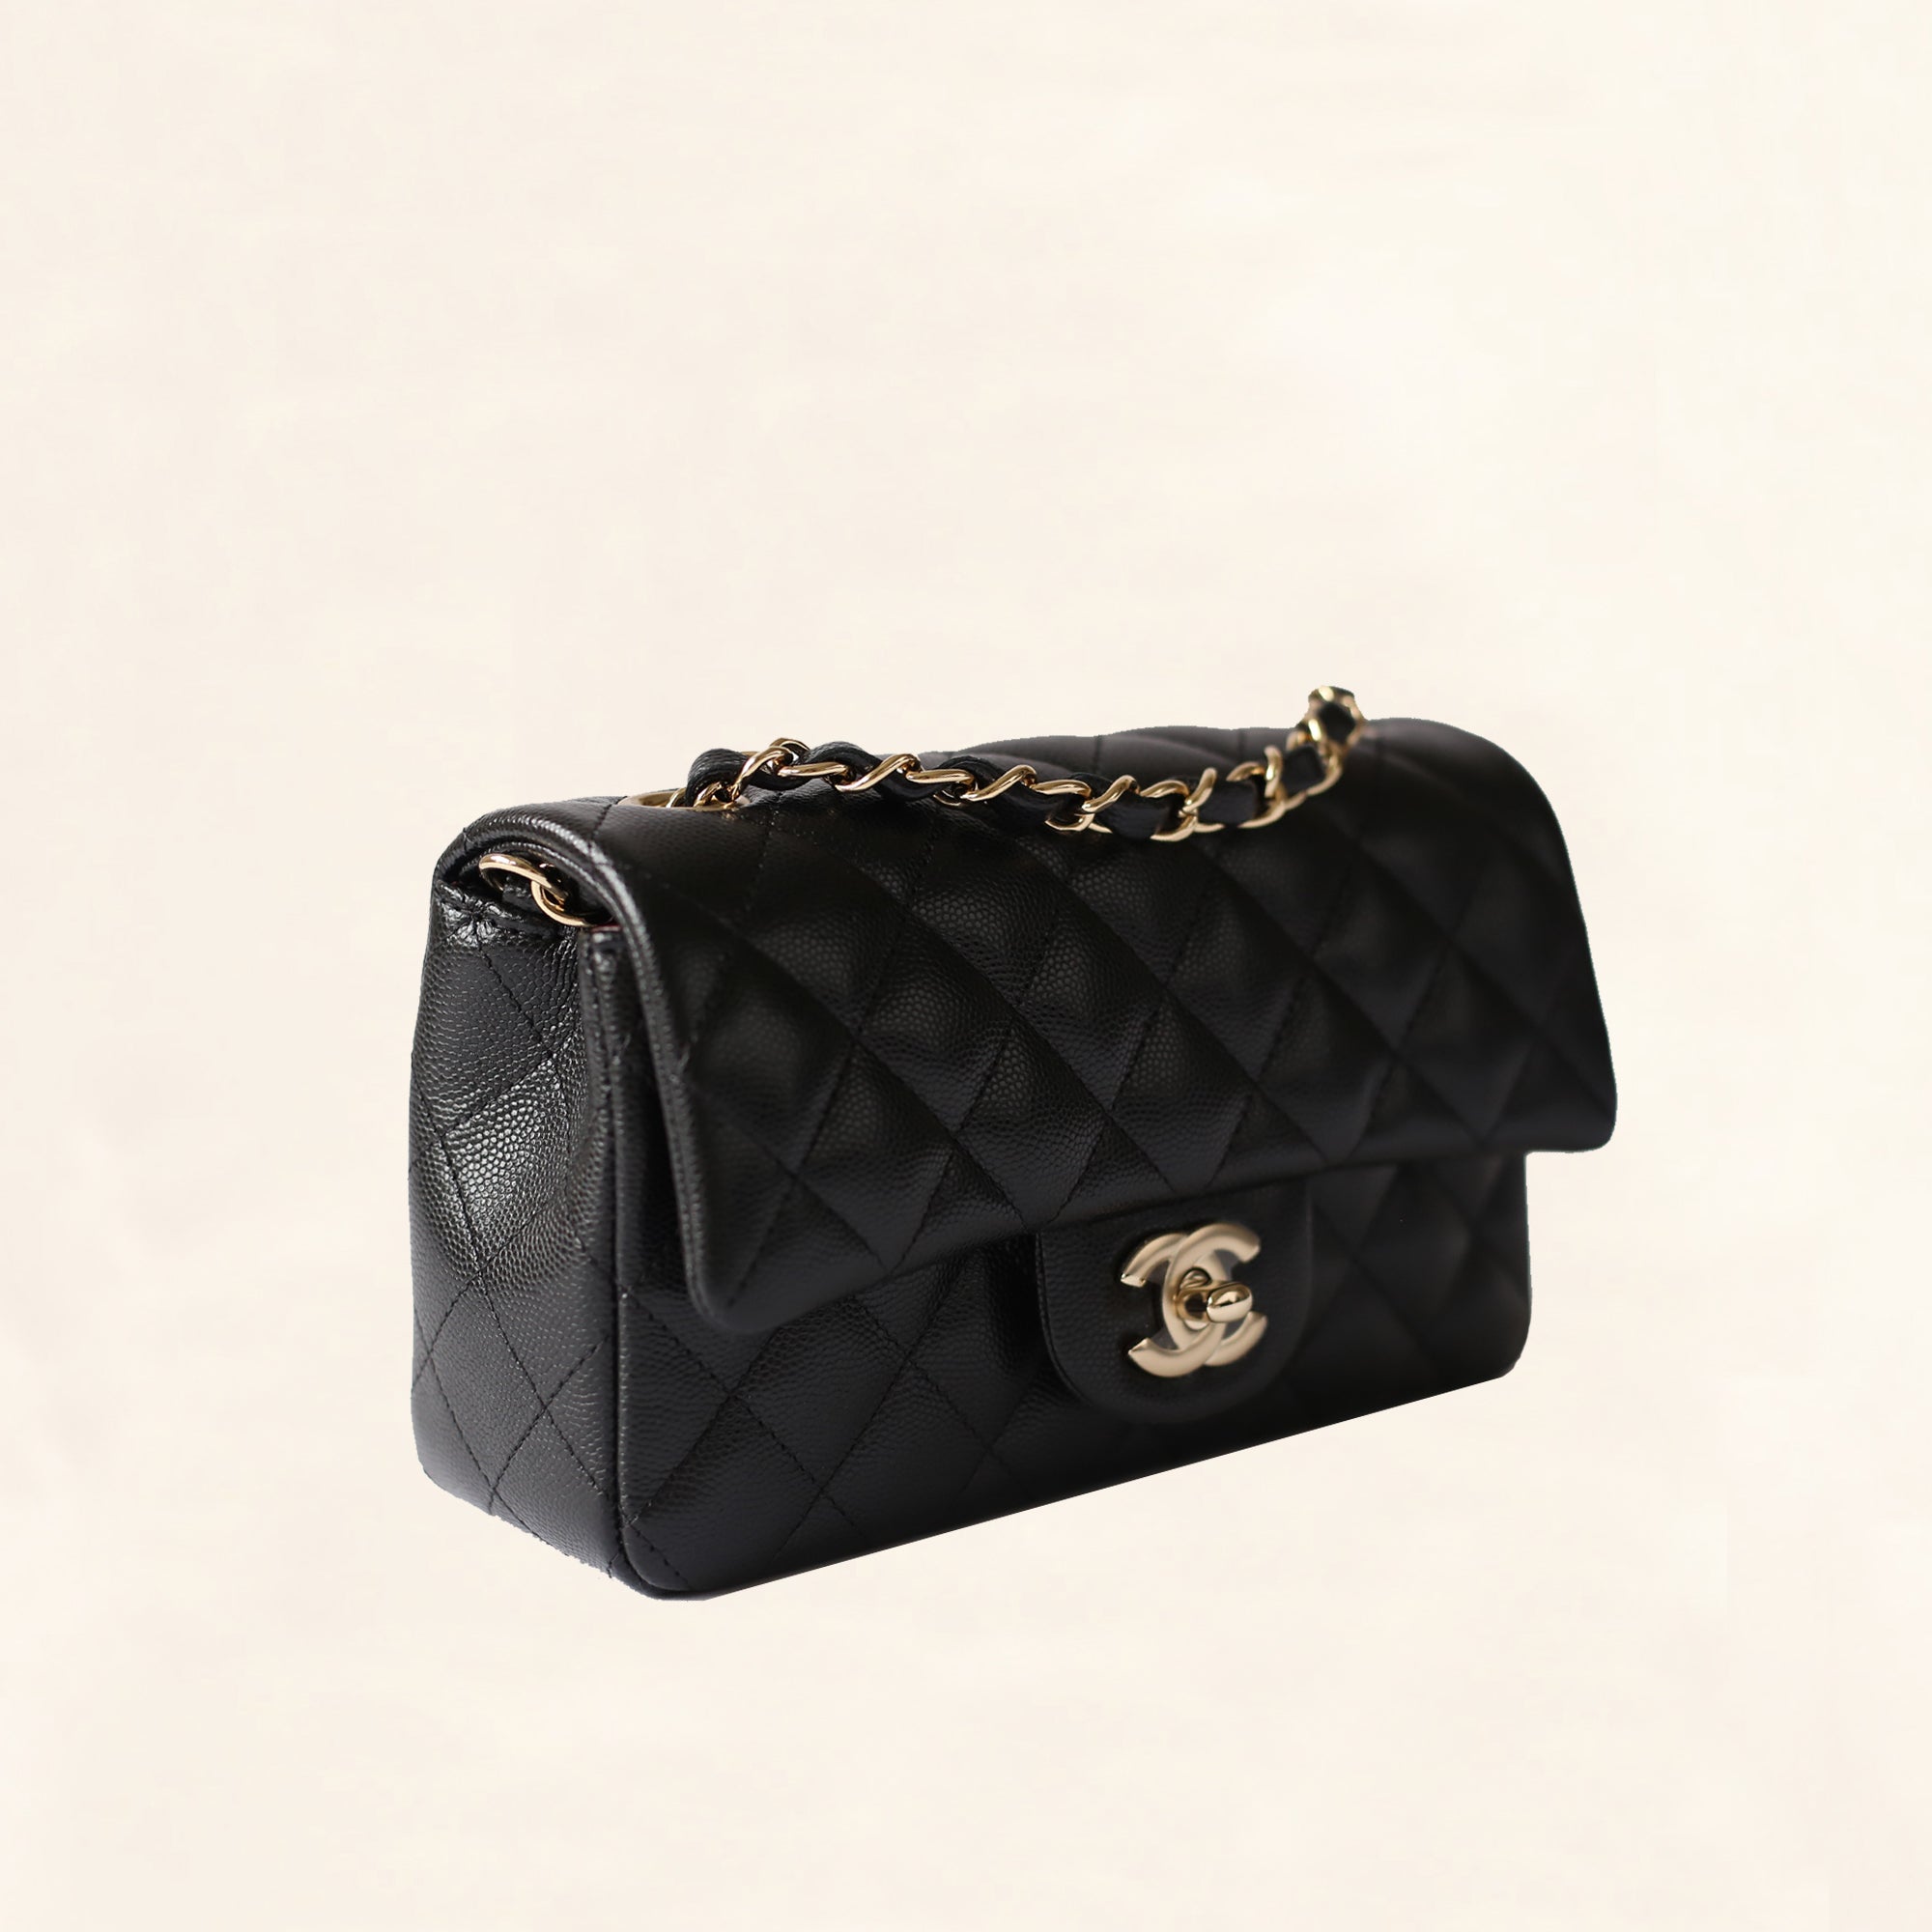 Chanel Mini Flap Bag With Handle  Nice Bag